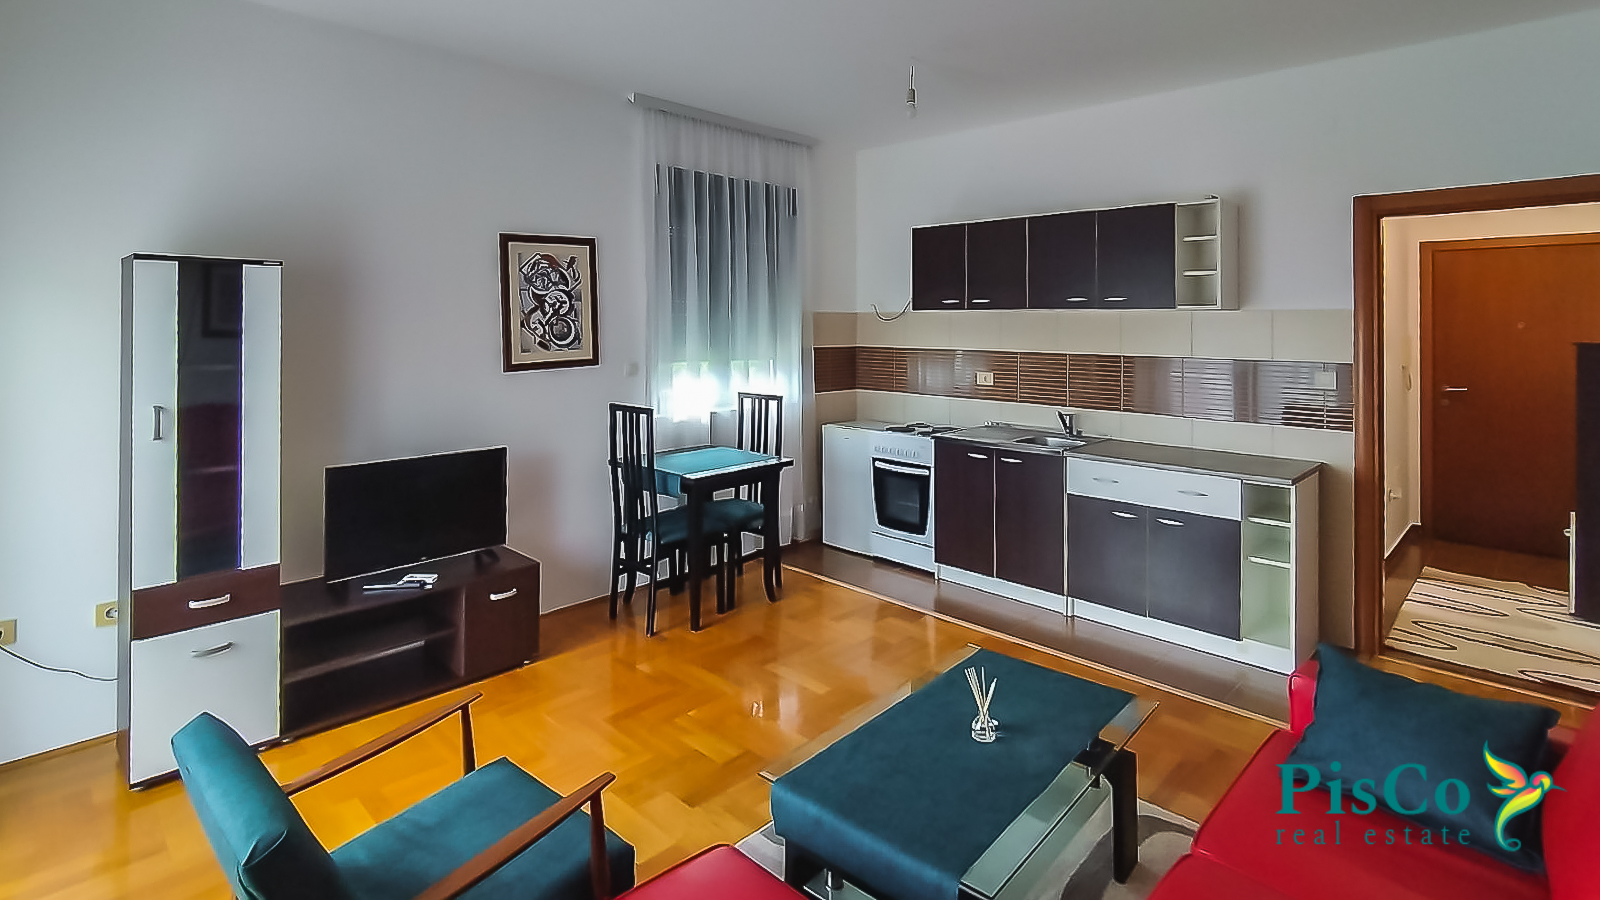 Comfortable studio apartment 30m2 for rent near Ars Medica